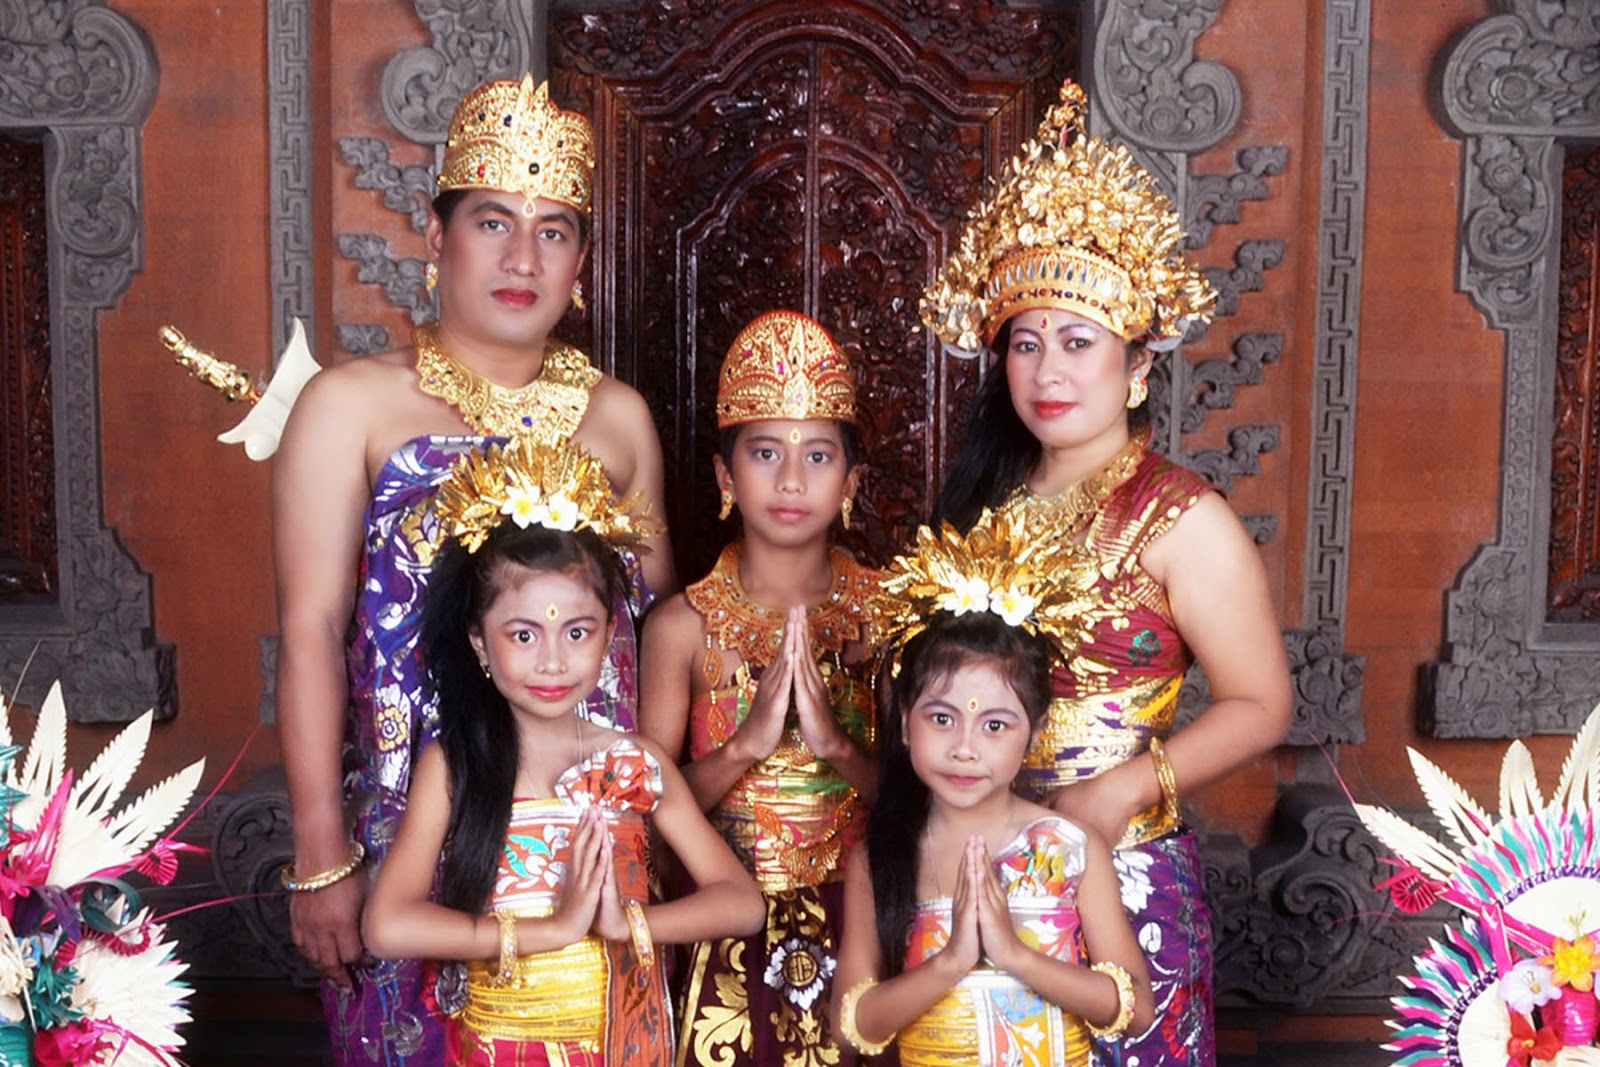  Gambar Pakaian Adat Bali newhairstylesformen2014 com